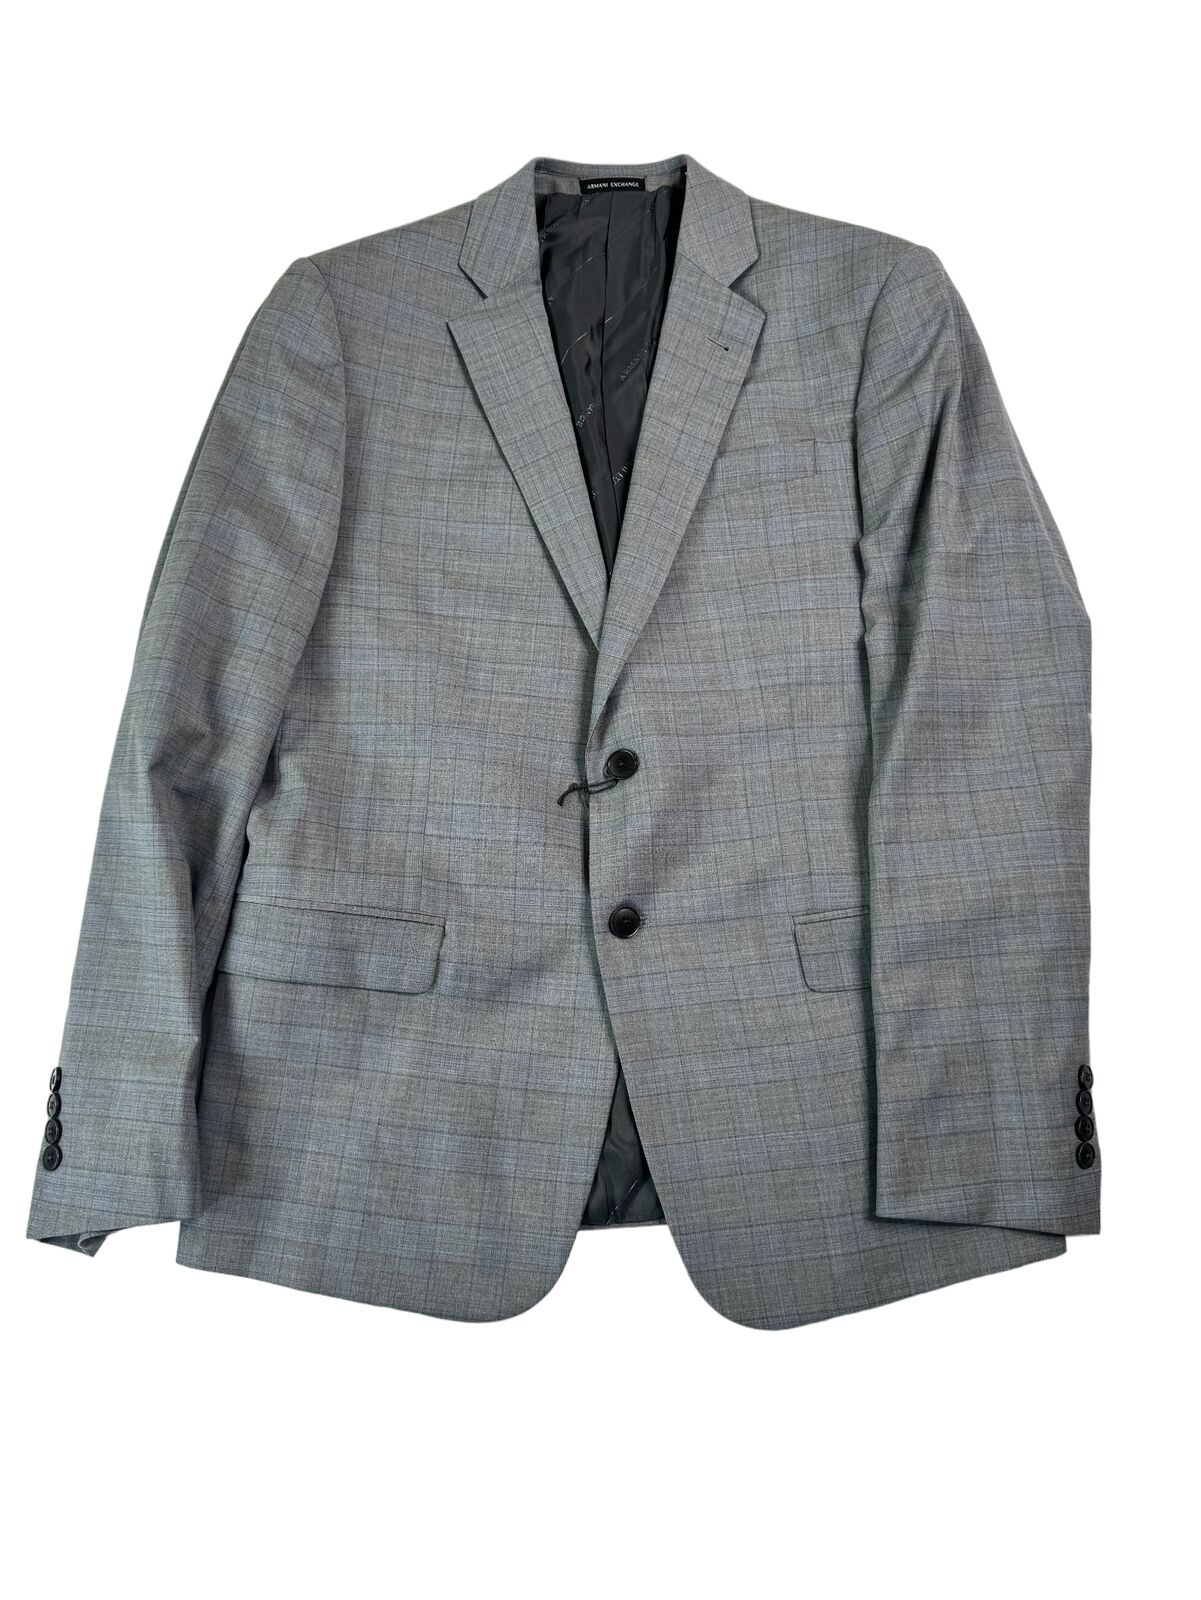 AX Armani Exchange Men\'s Slim-Fit Plaid Suit Jacket 42R Grey / Light Blue